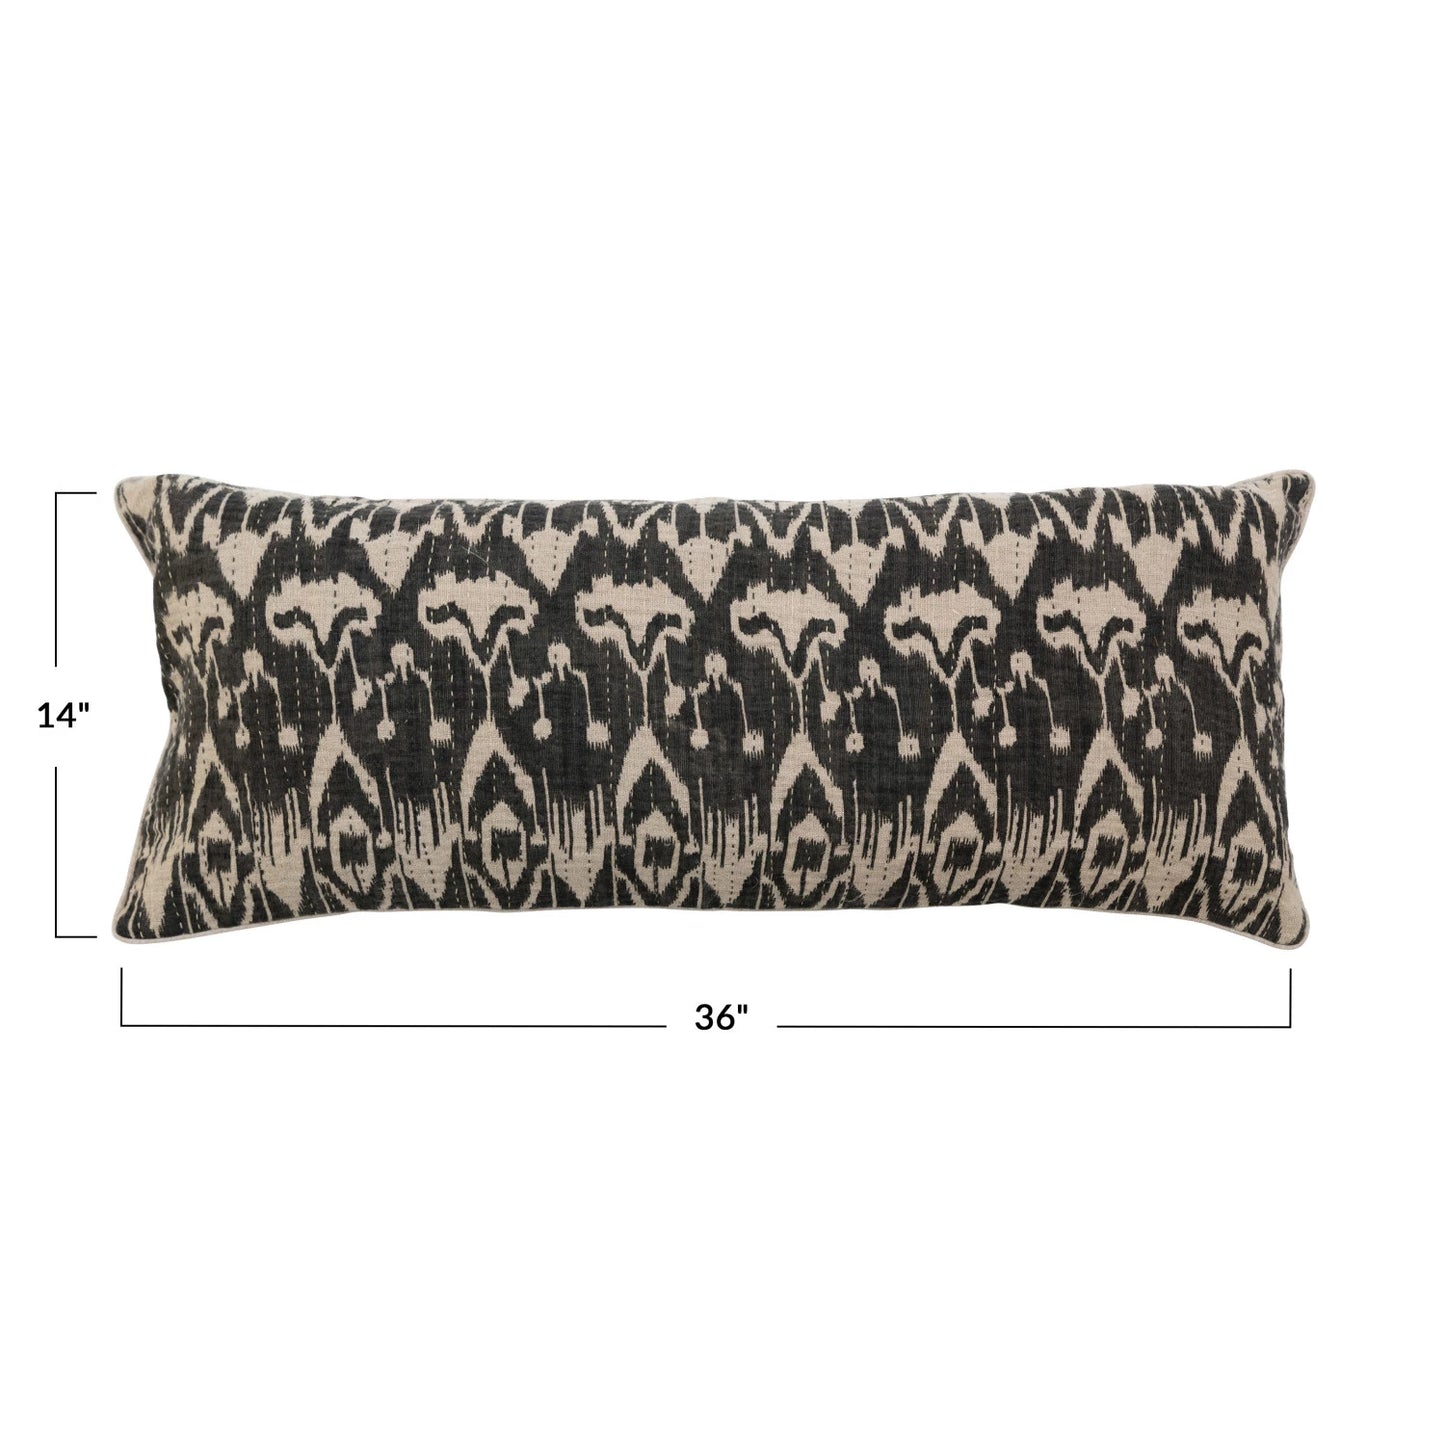 Woven Linen Lumbar Pillow w/ Ikat Print, Embroidery